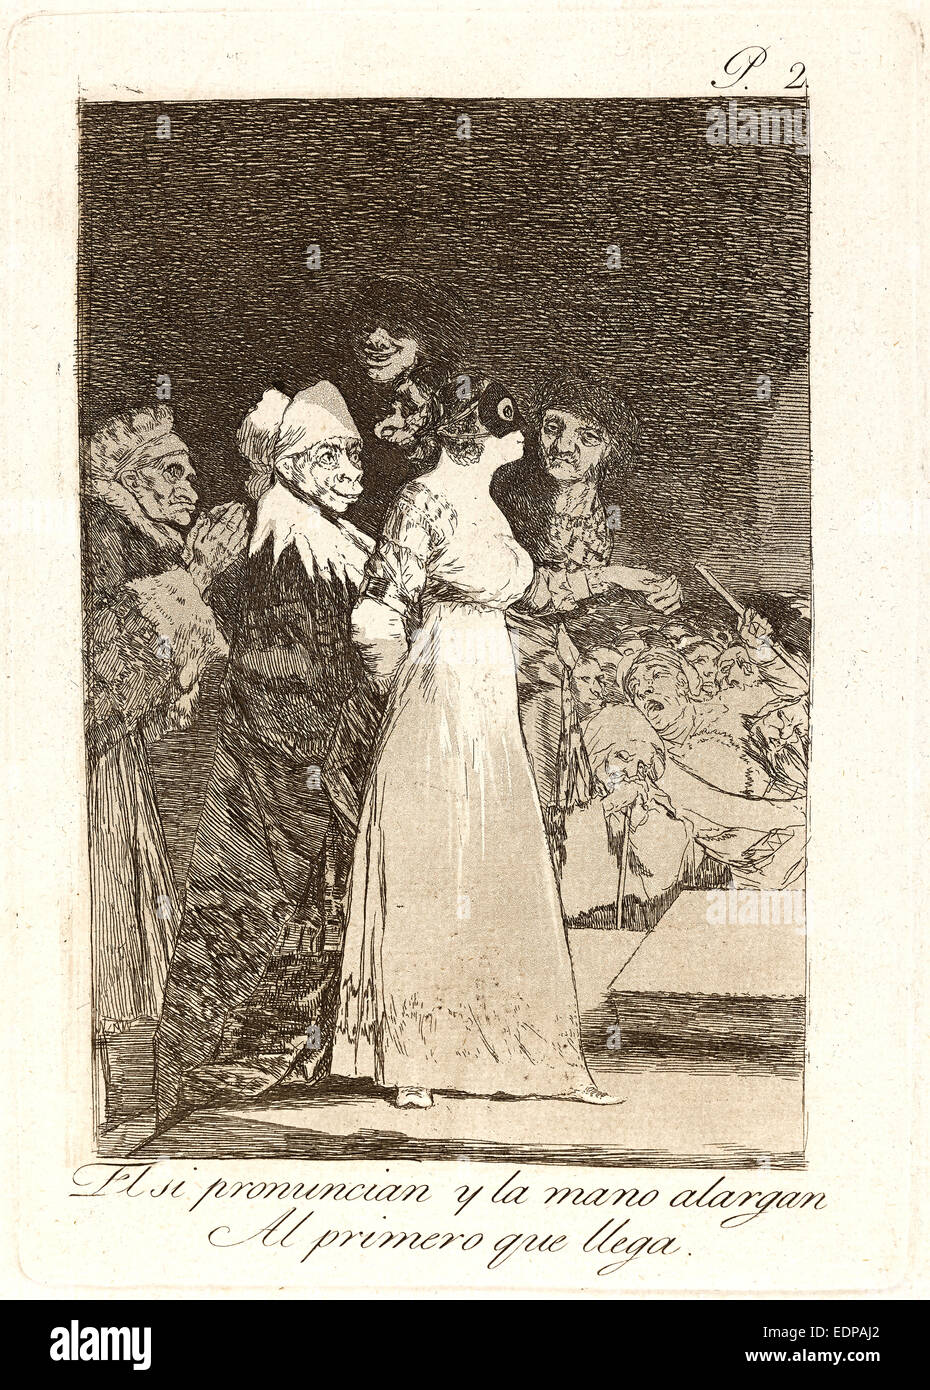 Francisco de Goya (Spagnolo, 1746-1828). El si pronuncian y la mano alargan Al primero que llega Foto Stock